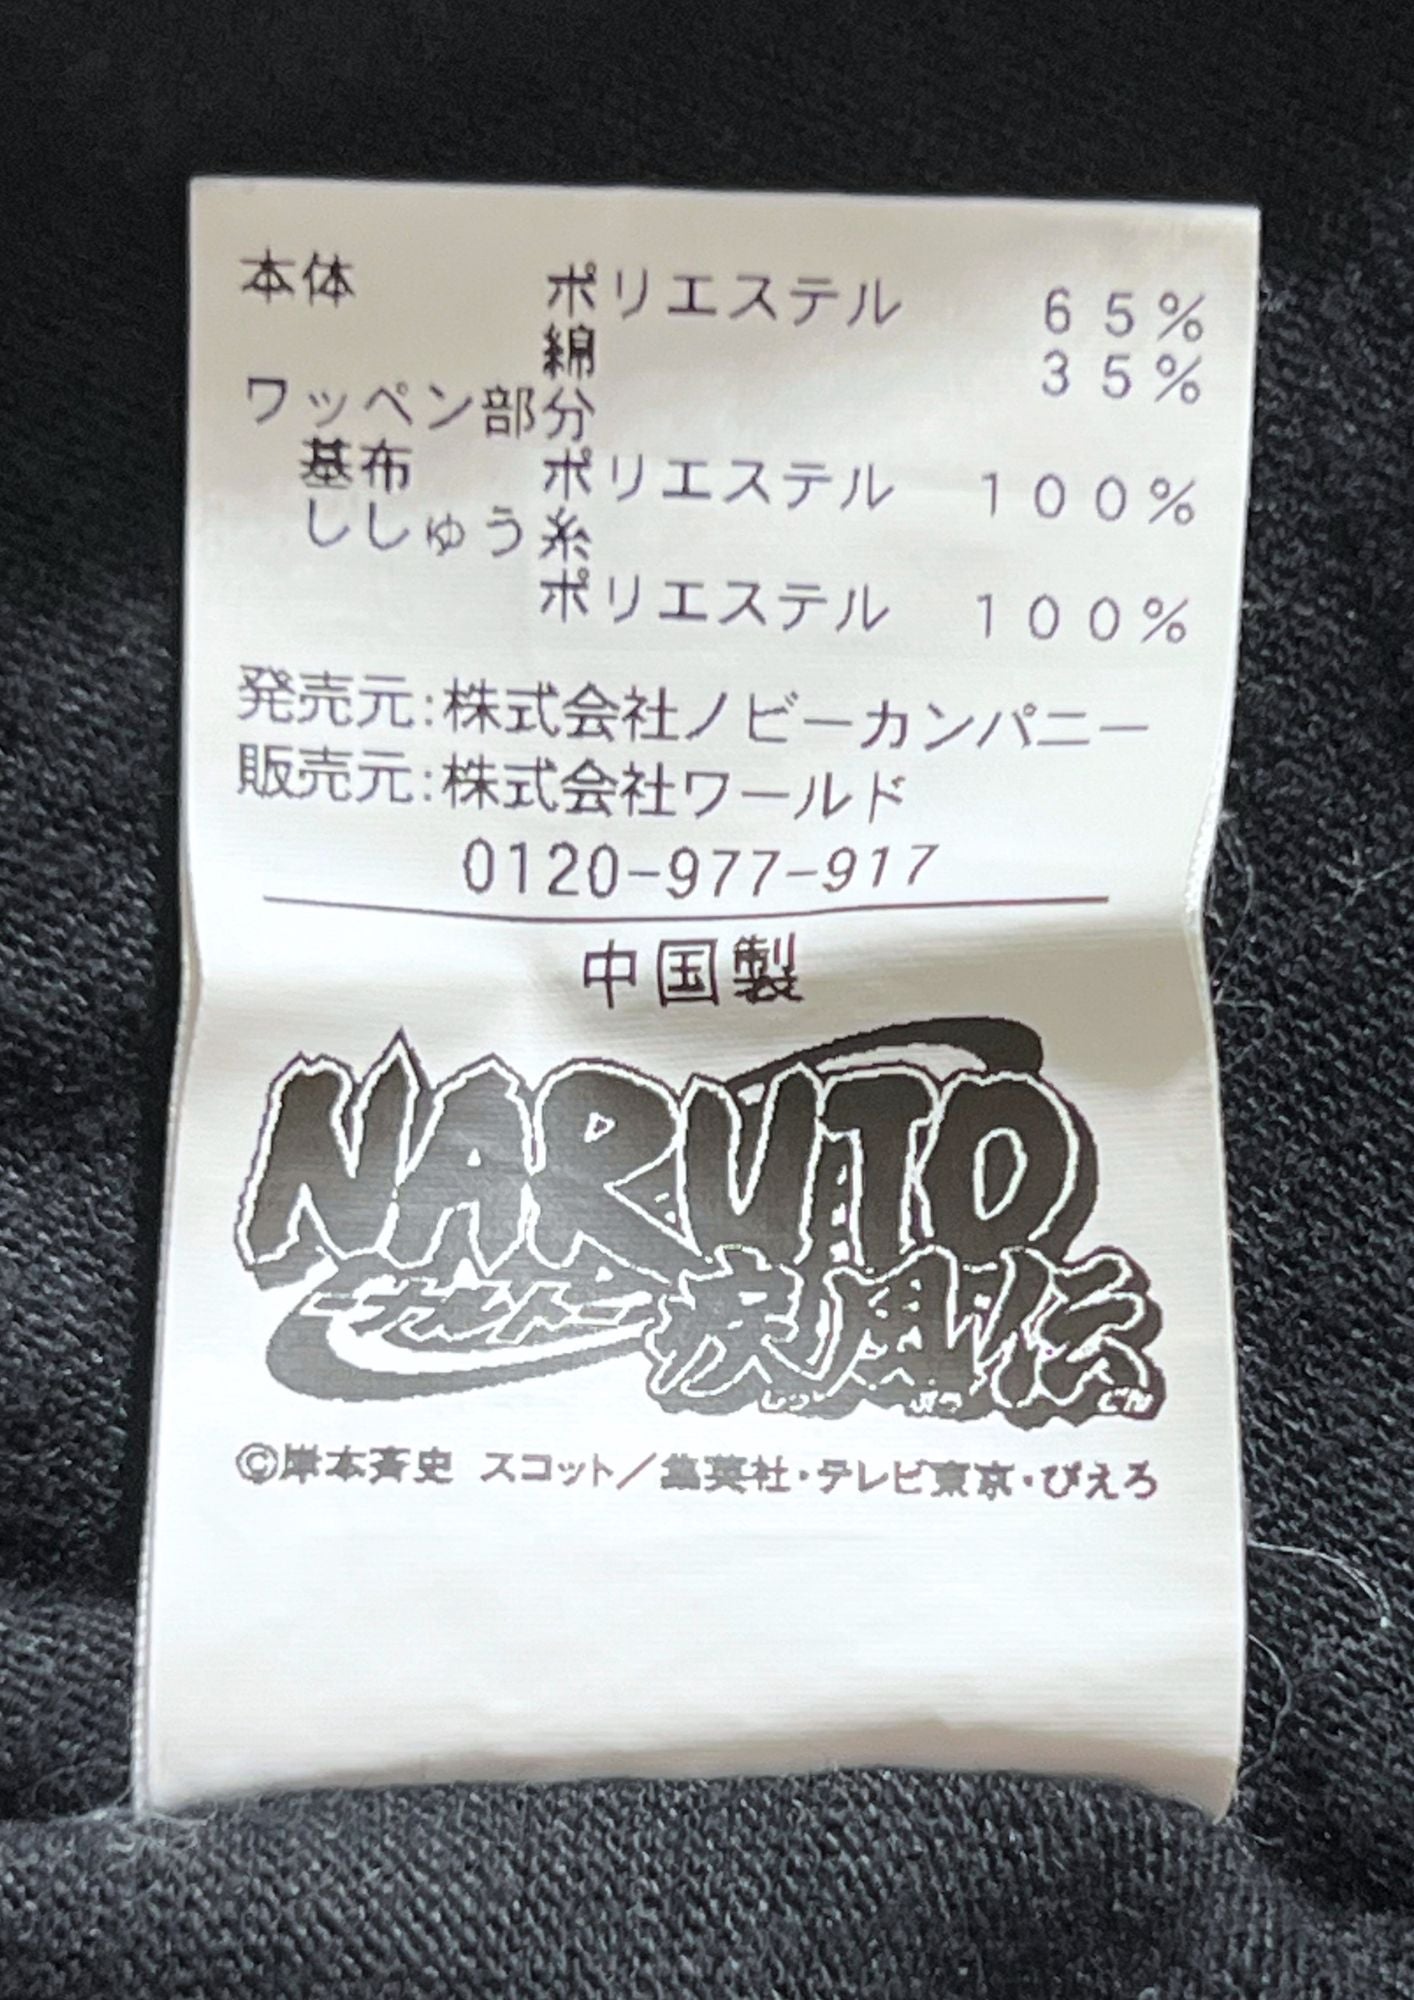 Naruto x TK MIXPICE Takeo Kikuchi Sasuke and Naruto T-shirt